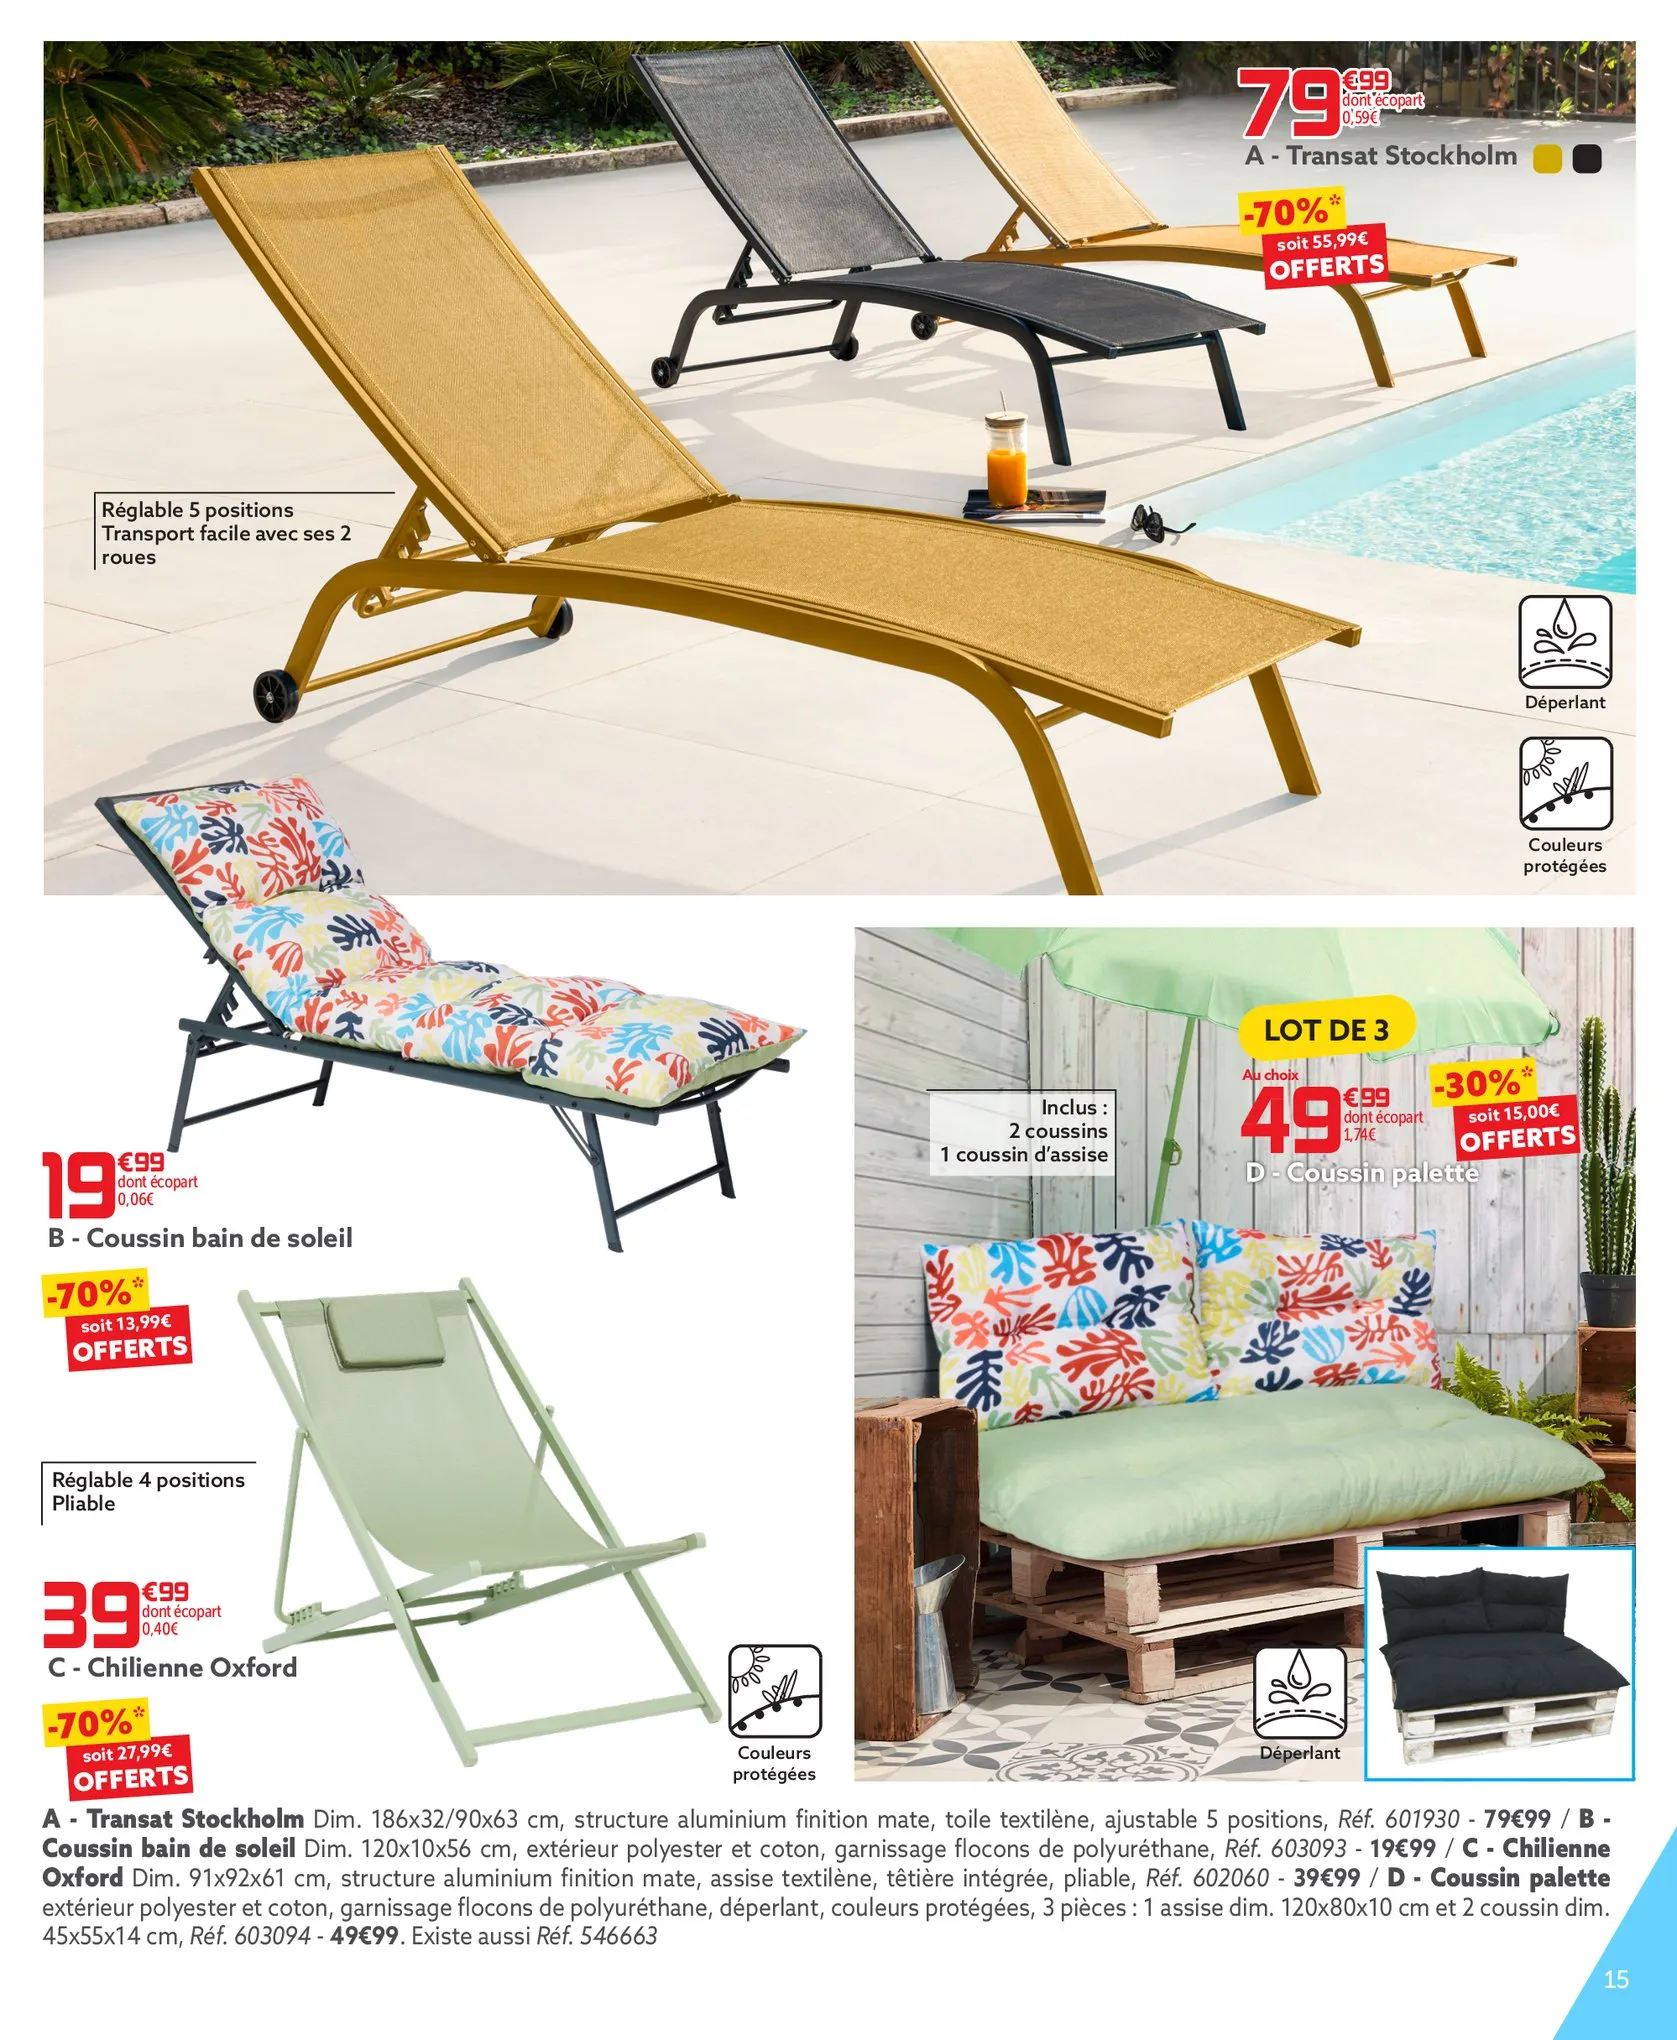 Catalogue Jusqu'à - 70% en bon d'achat sur tous les produits d'été!, page 00015